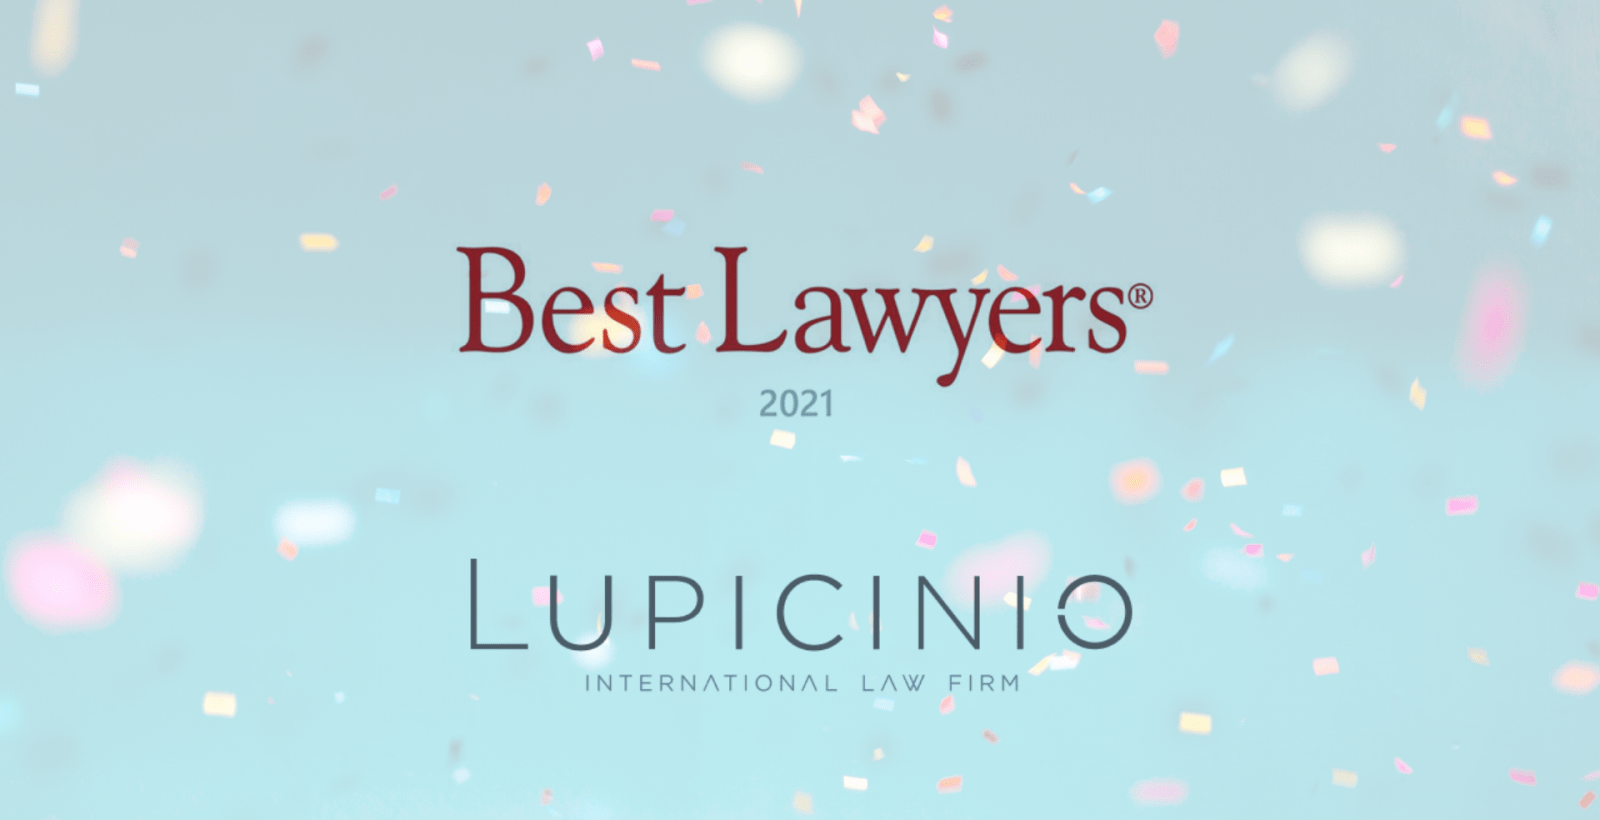 BEST LAWYERS celebrates Lupicinio International Law Firm